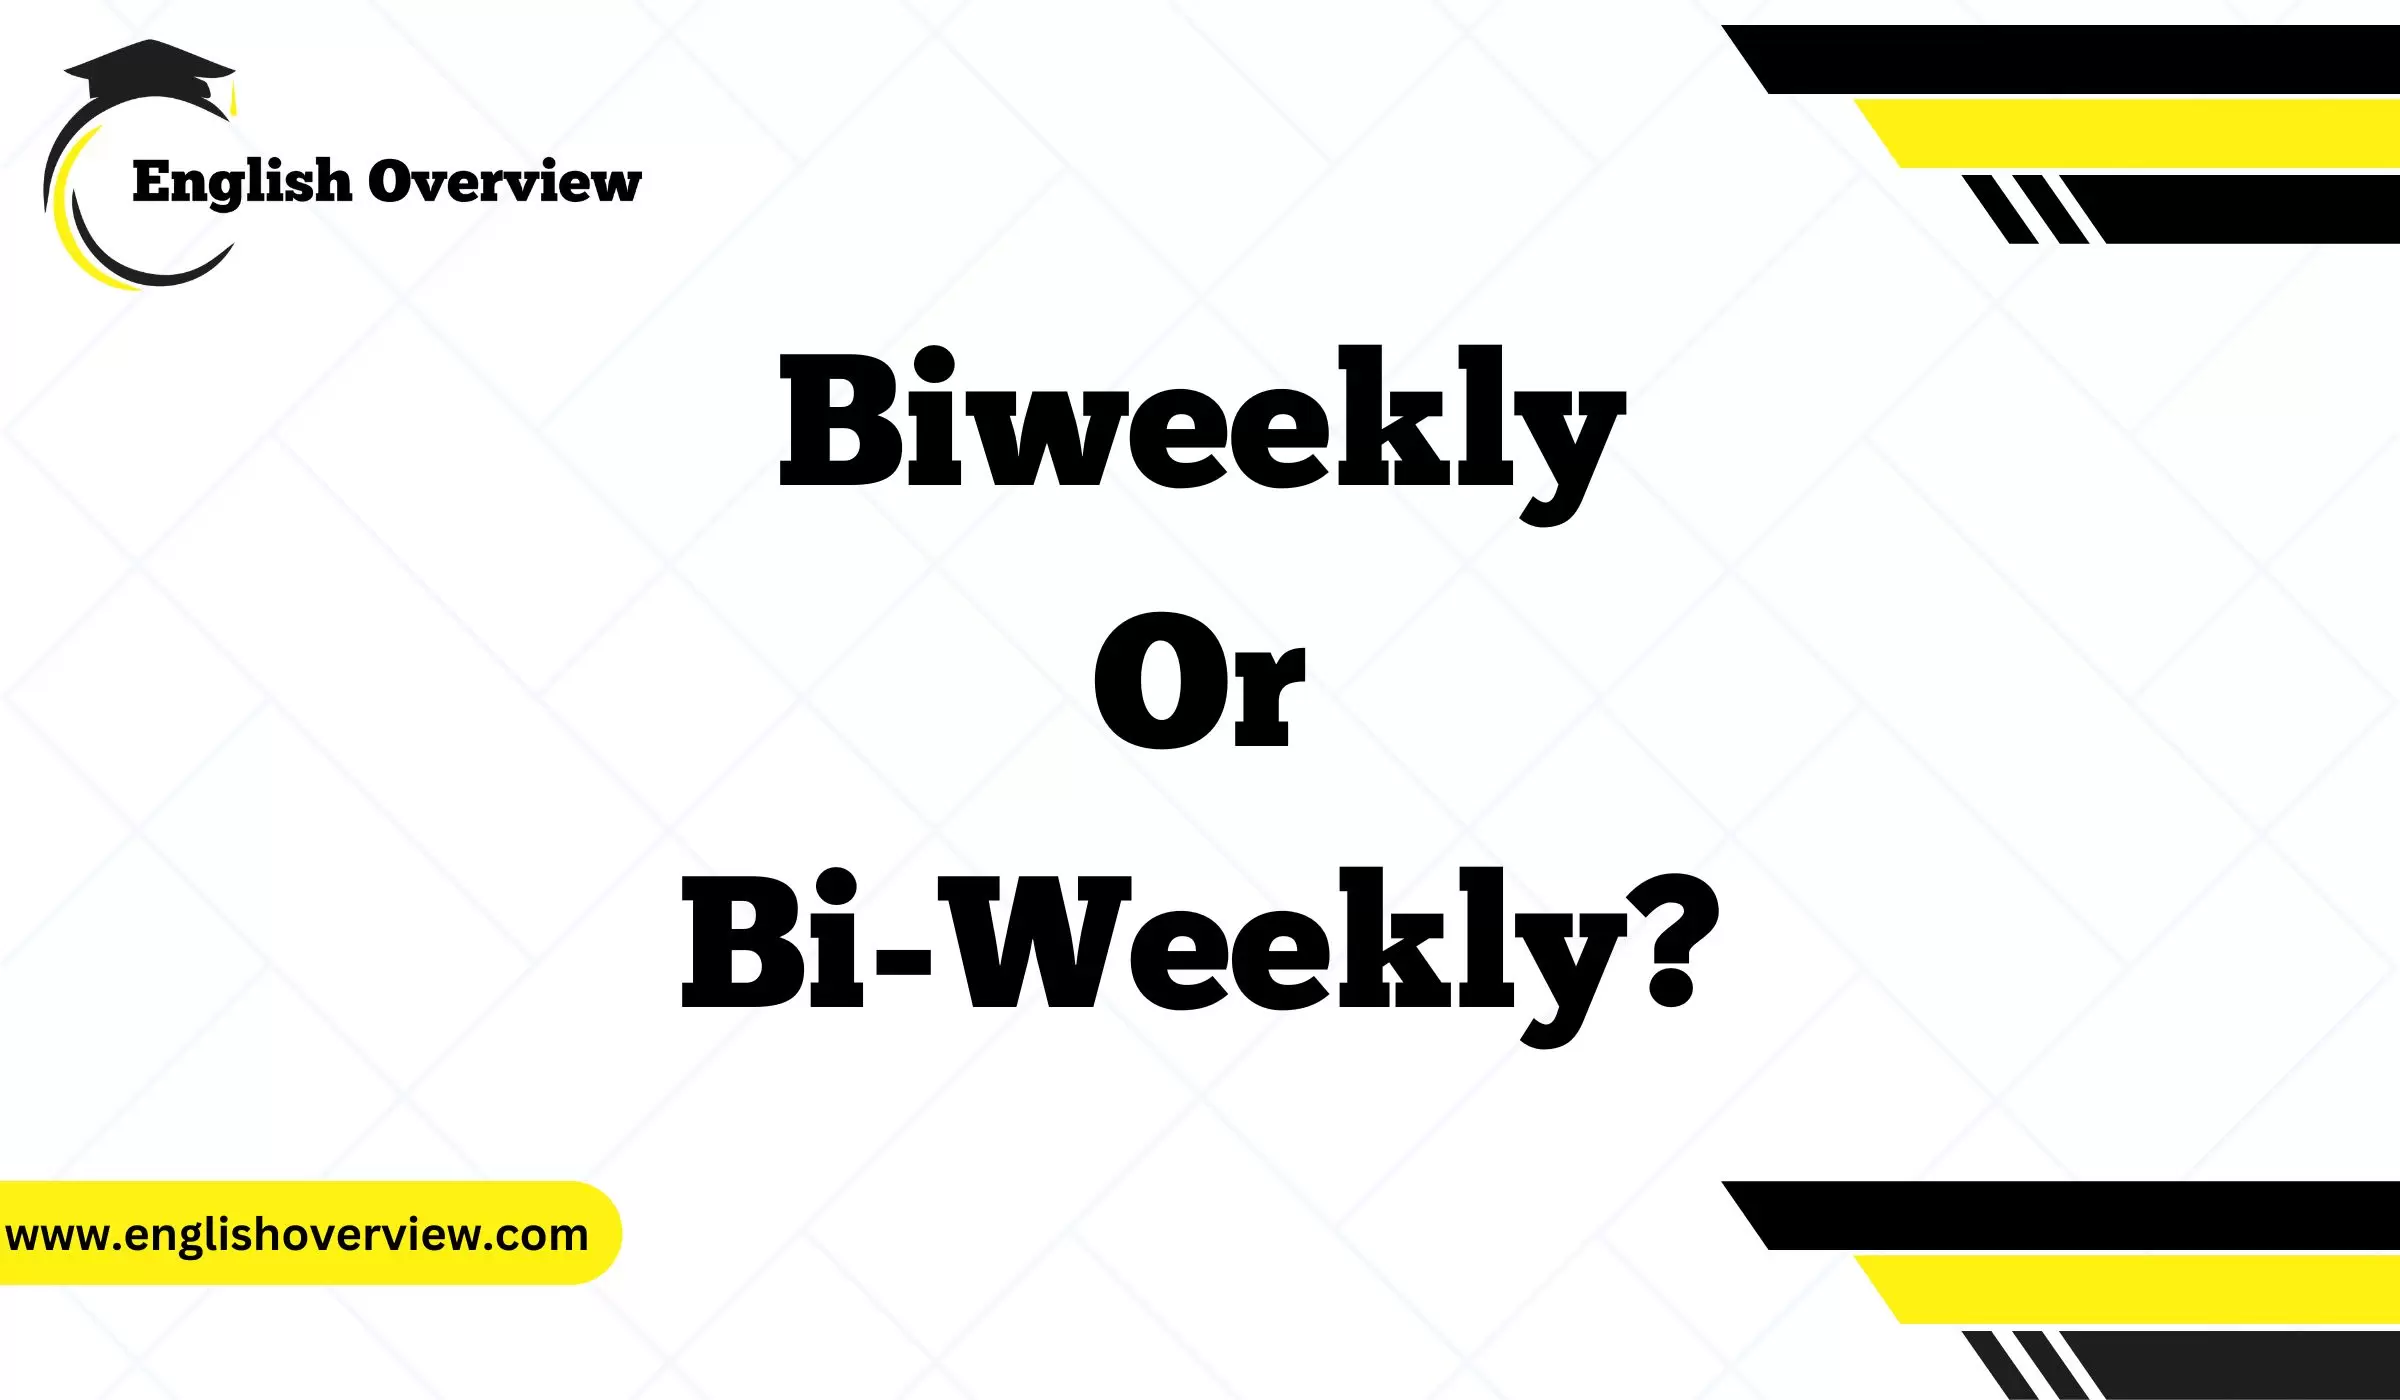 Biweekly or Bi-Weekly